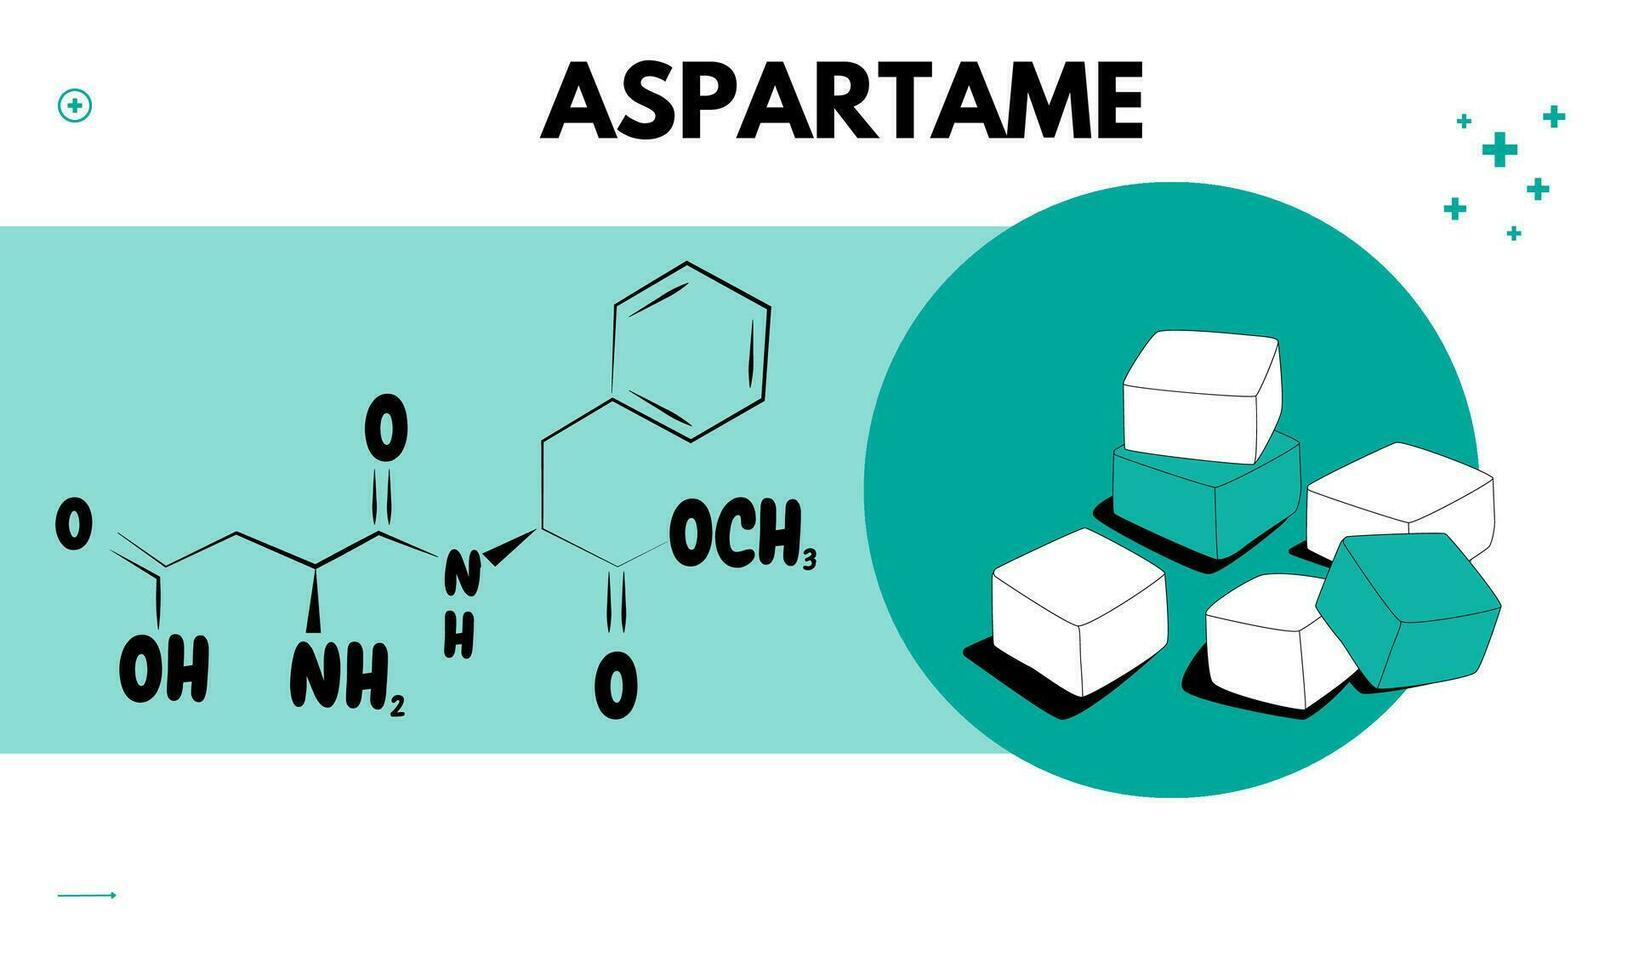 aspartame est une peu calorique artificiel édulcorant cette est approximativement 100 fois plus doux que sucre. édulcorant des produits vecteur